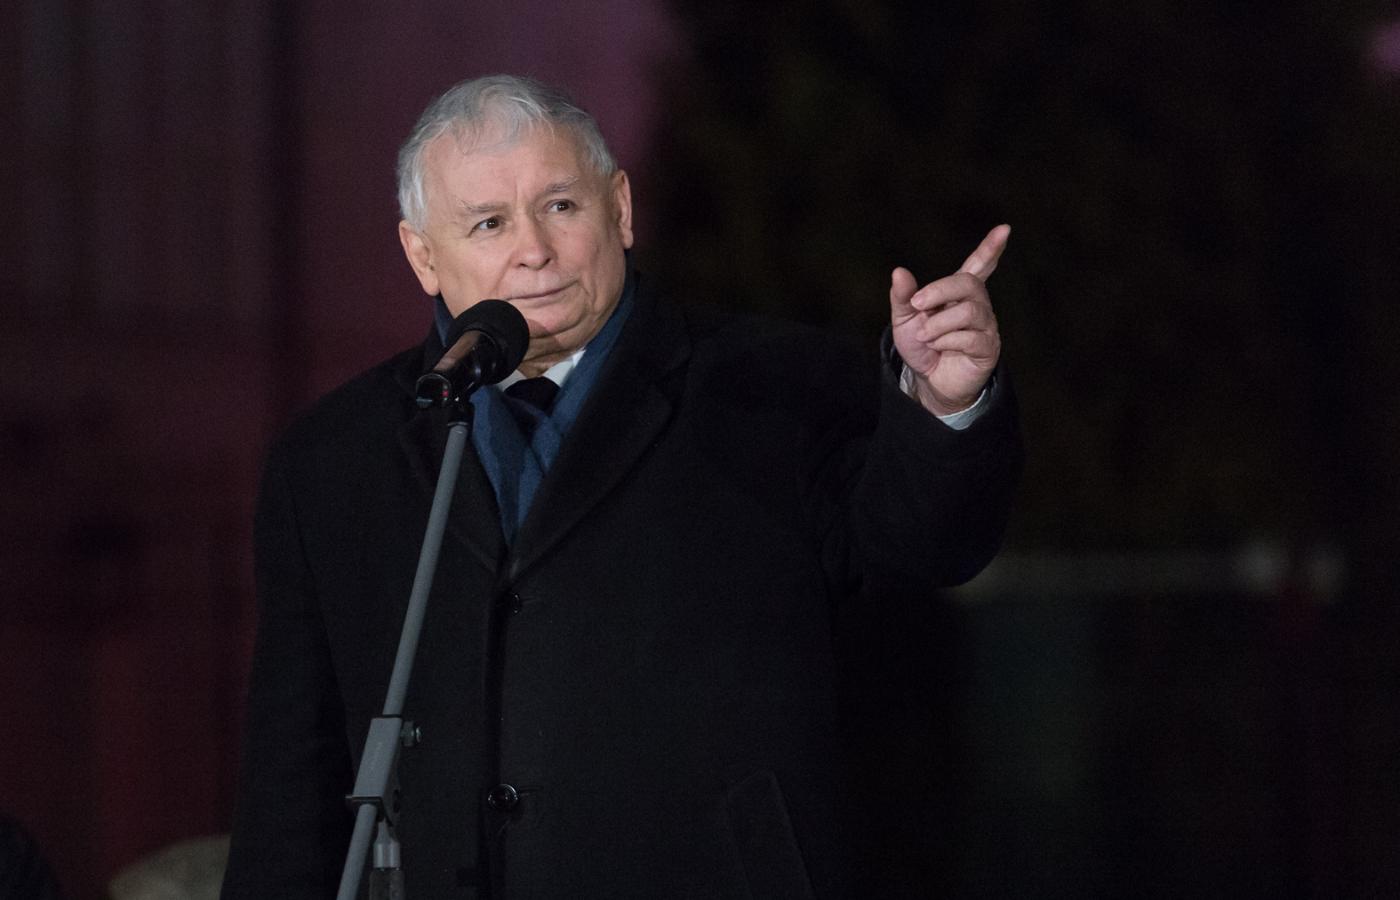 Polityków PiS o różnych poglądach i wybujałych ambicjach trzymają razem wysokie poparcie i uznanie przywództwa Kaczyńskiego.